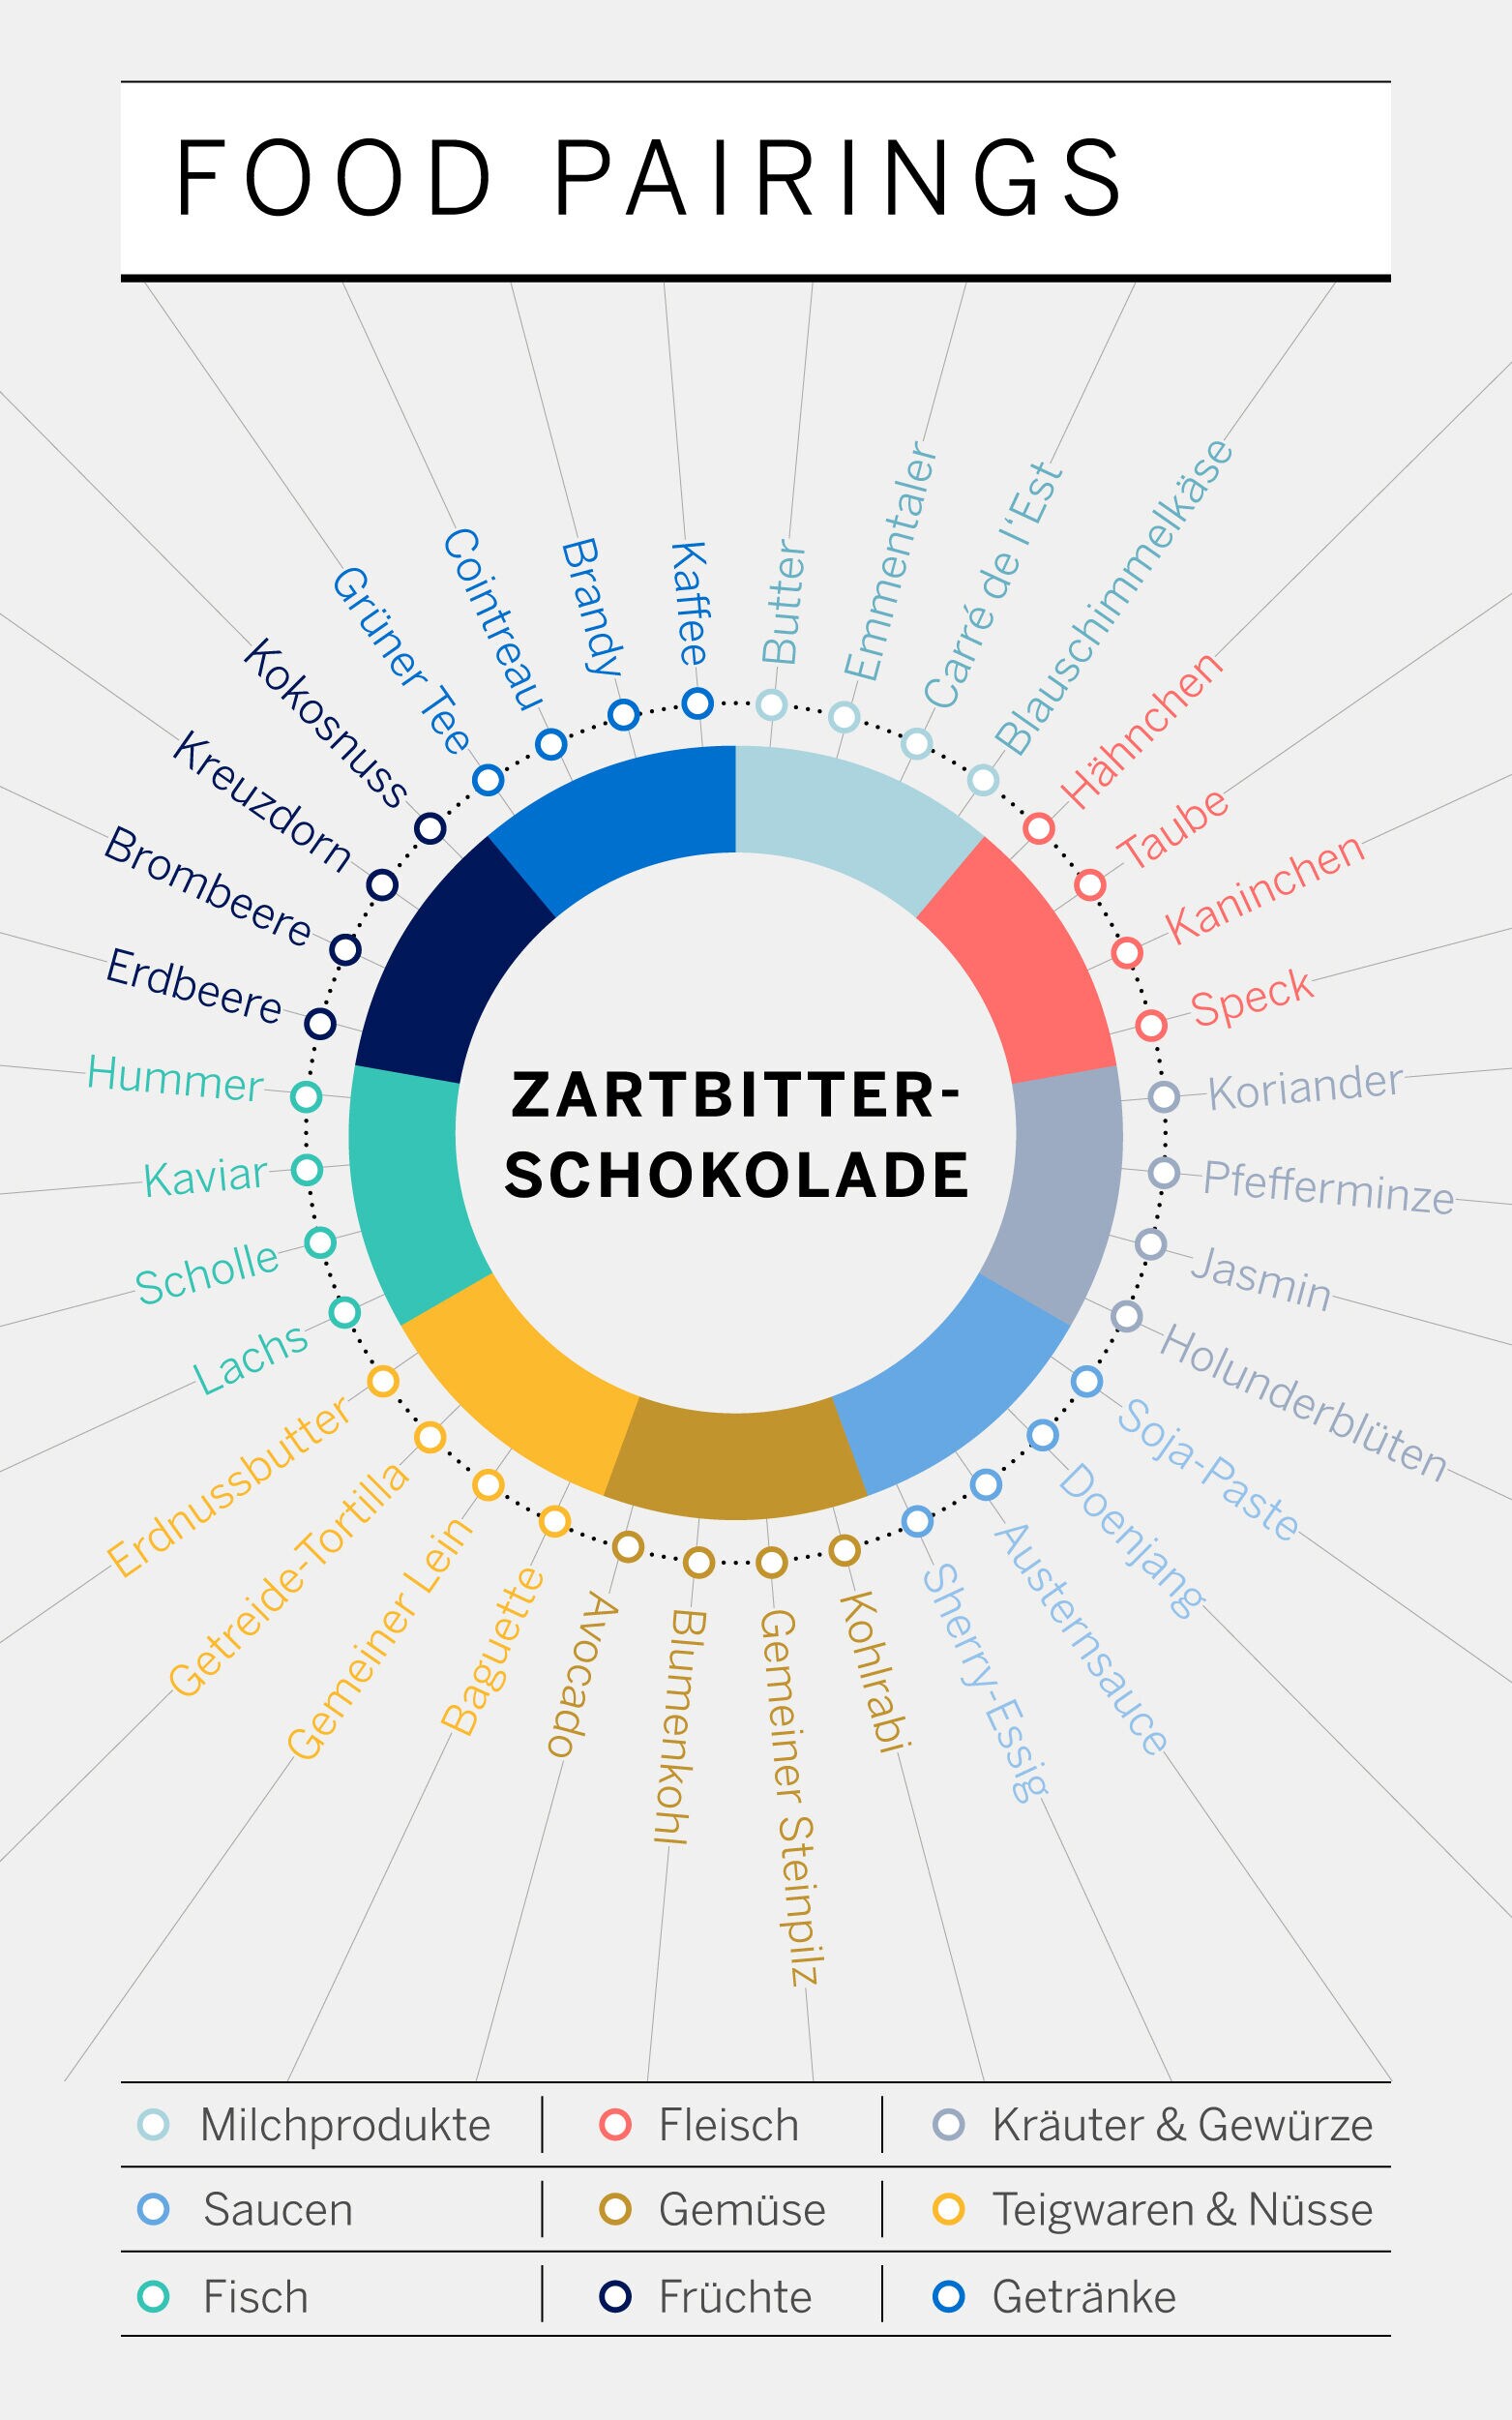 Foodpairing Infografik anhand des Beispiels Zartbitterschokolade